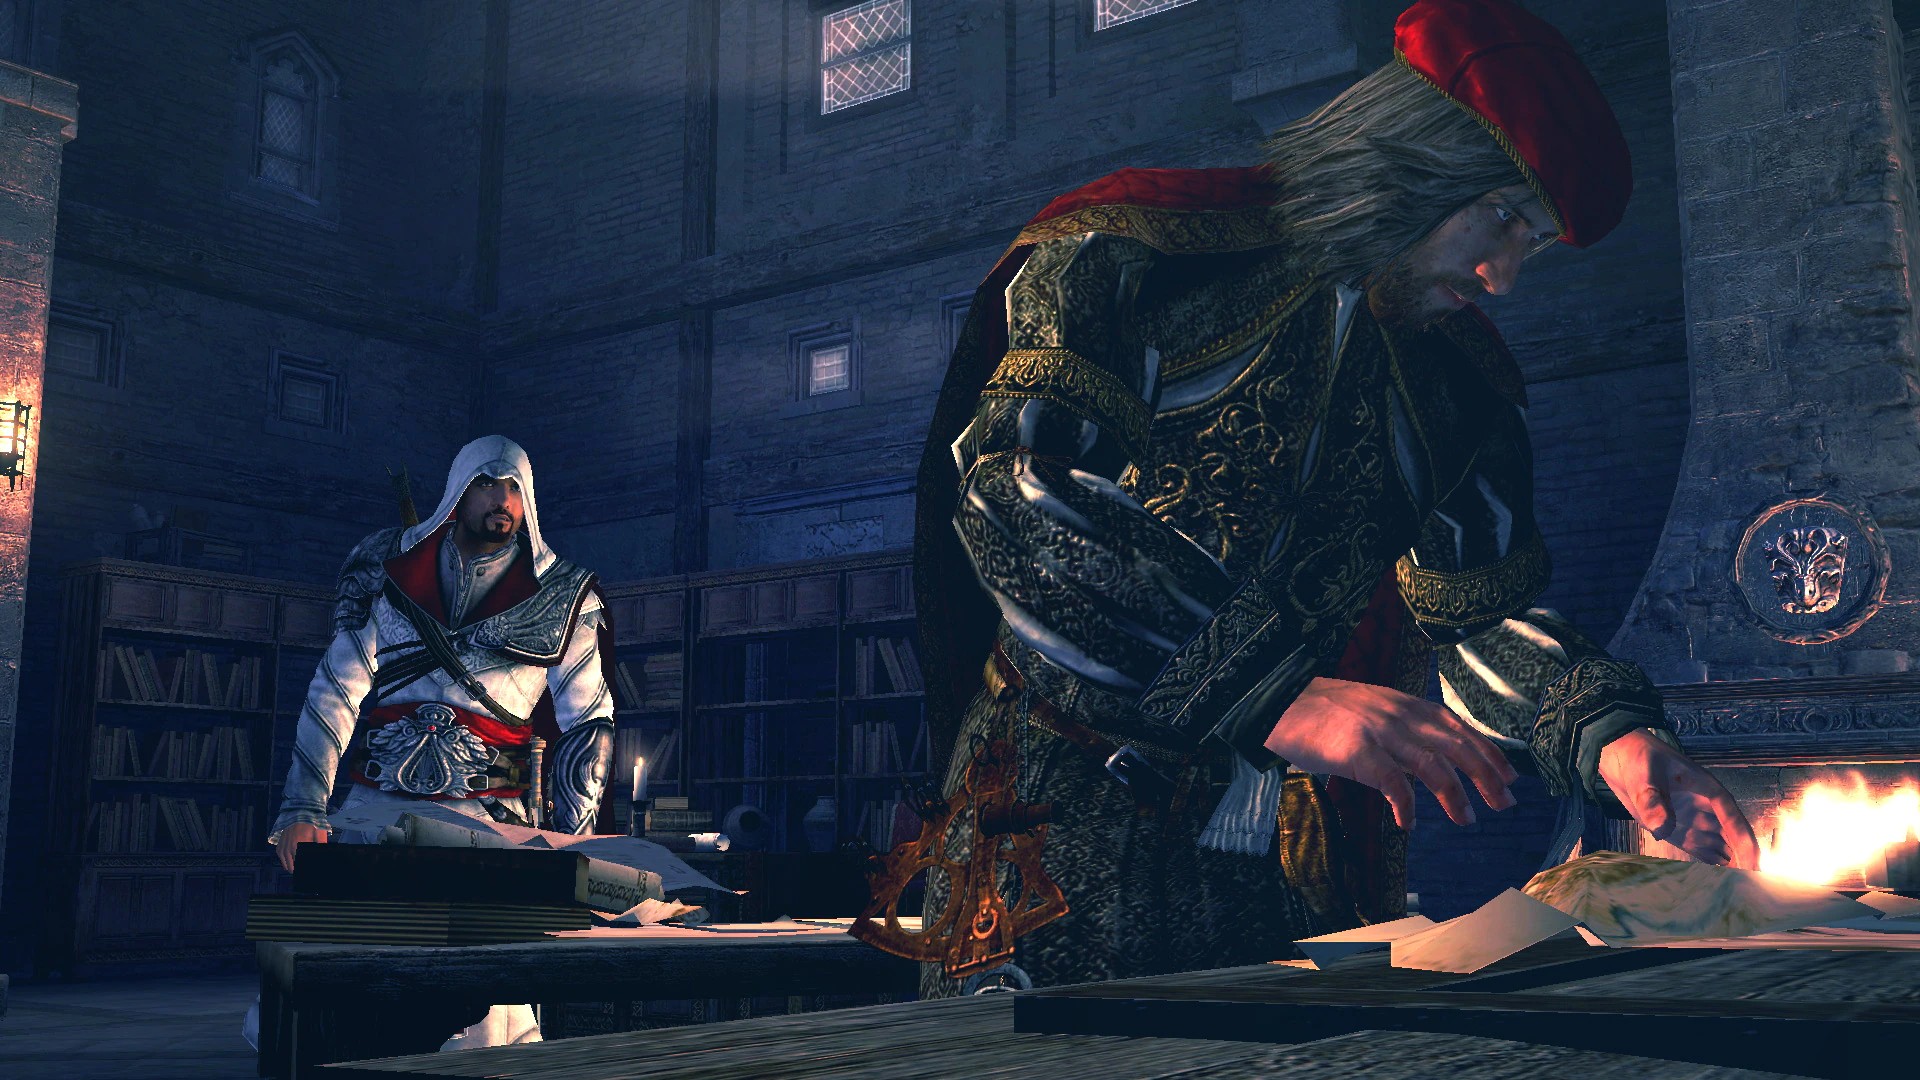 Assassin's Creed: Эцио Аудиторе. Коллекция, кадр № 2